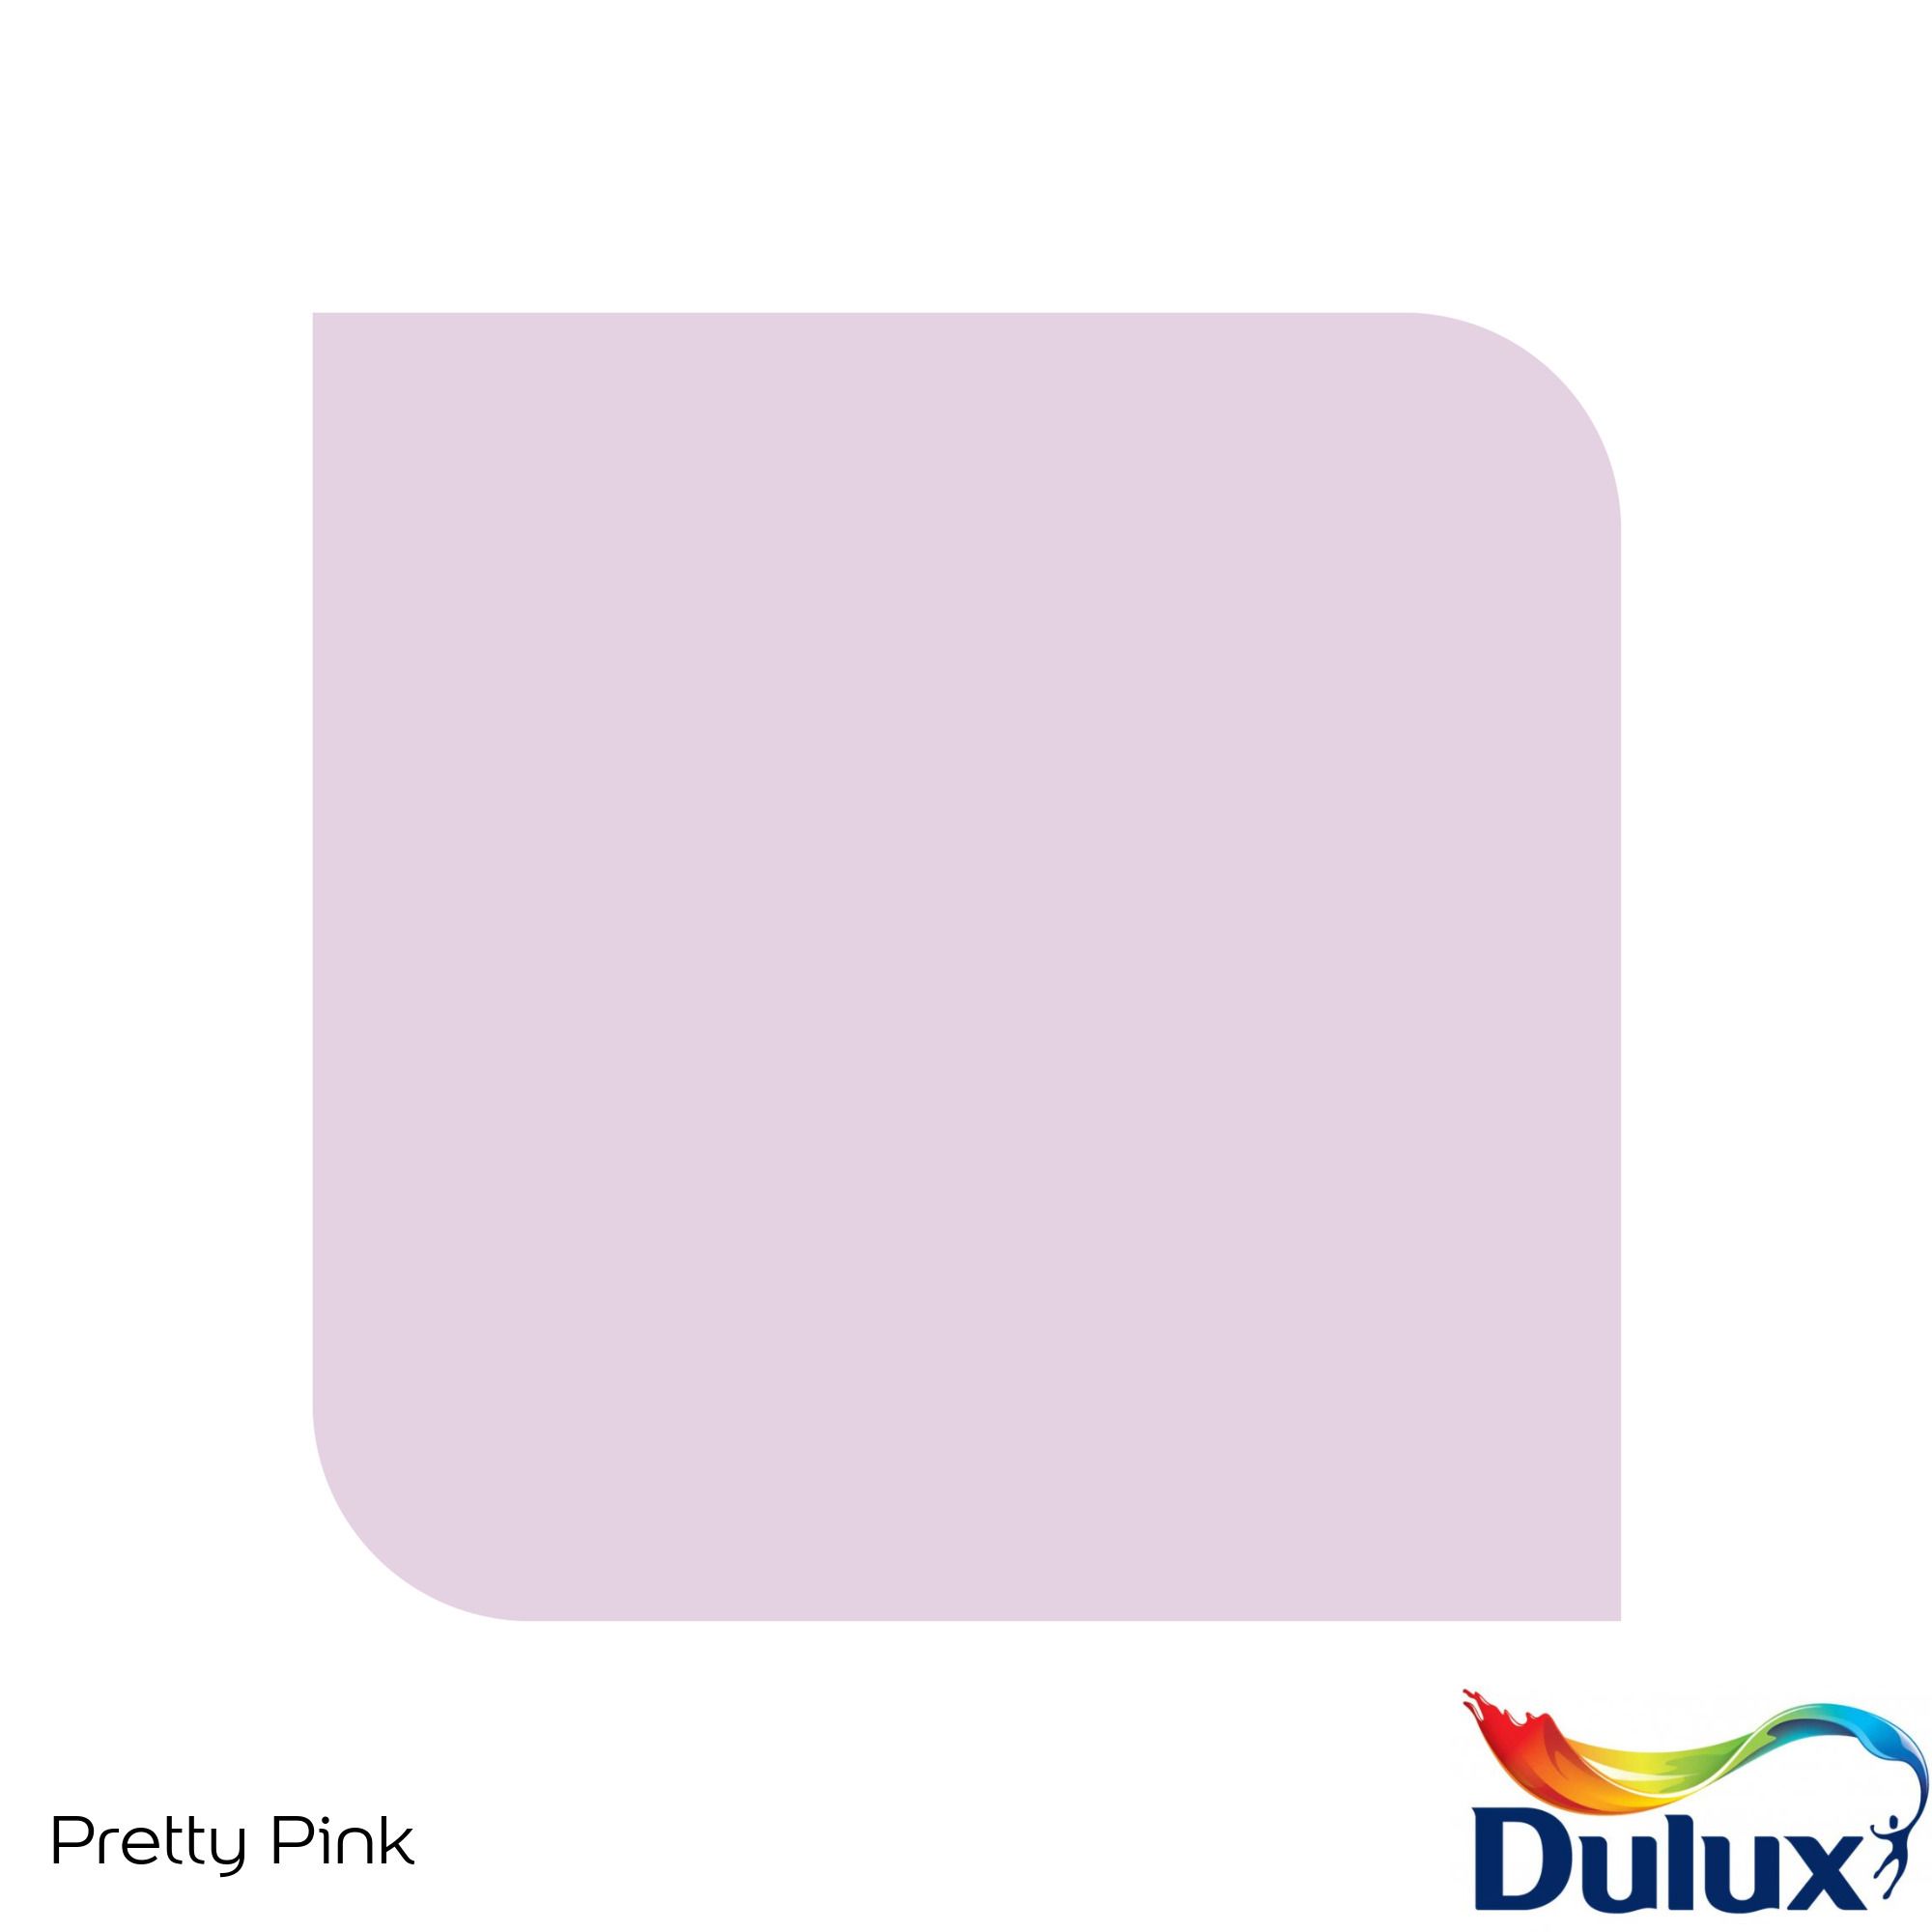 Dulux Standard Pretty pink Matt Emulsion paint, 30ml Tester pot